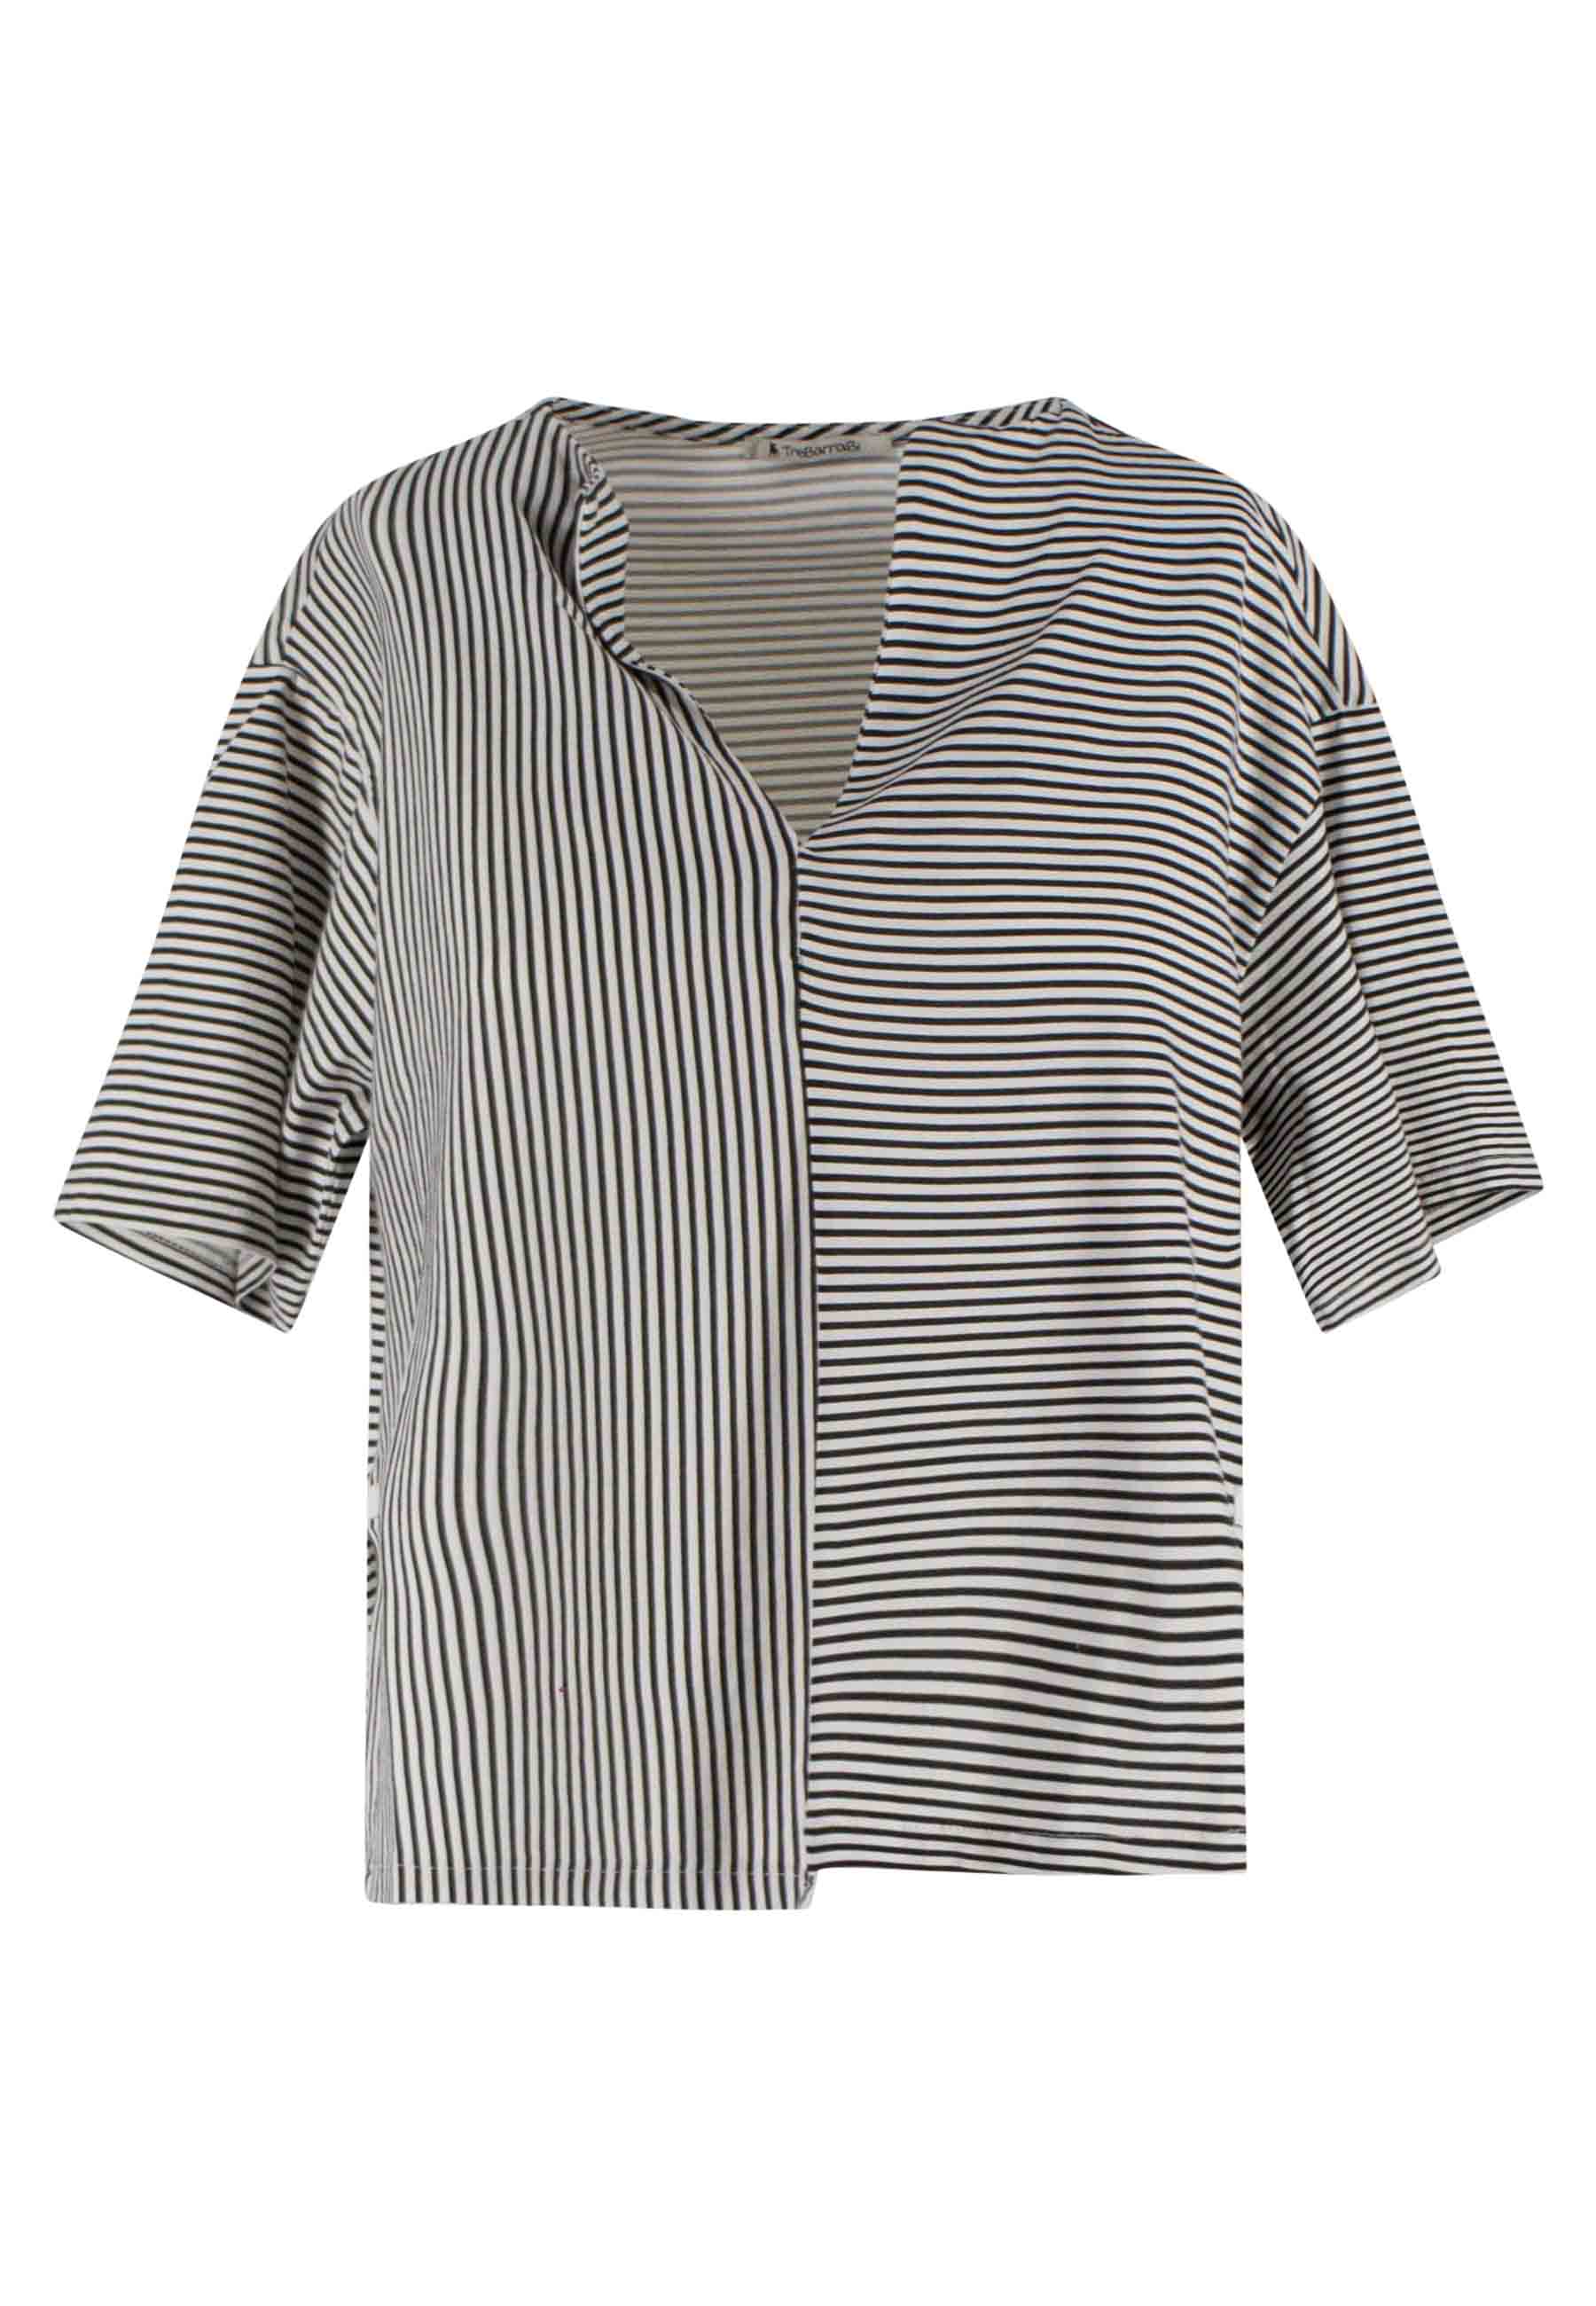 T-shirt femme Tita en coton rayé noir et blanc et col V